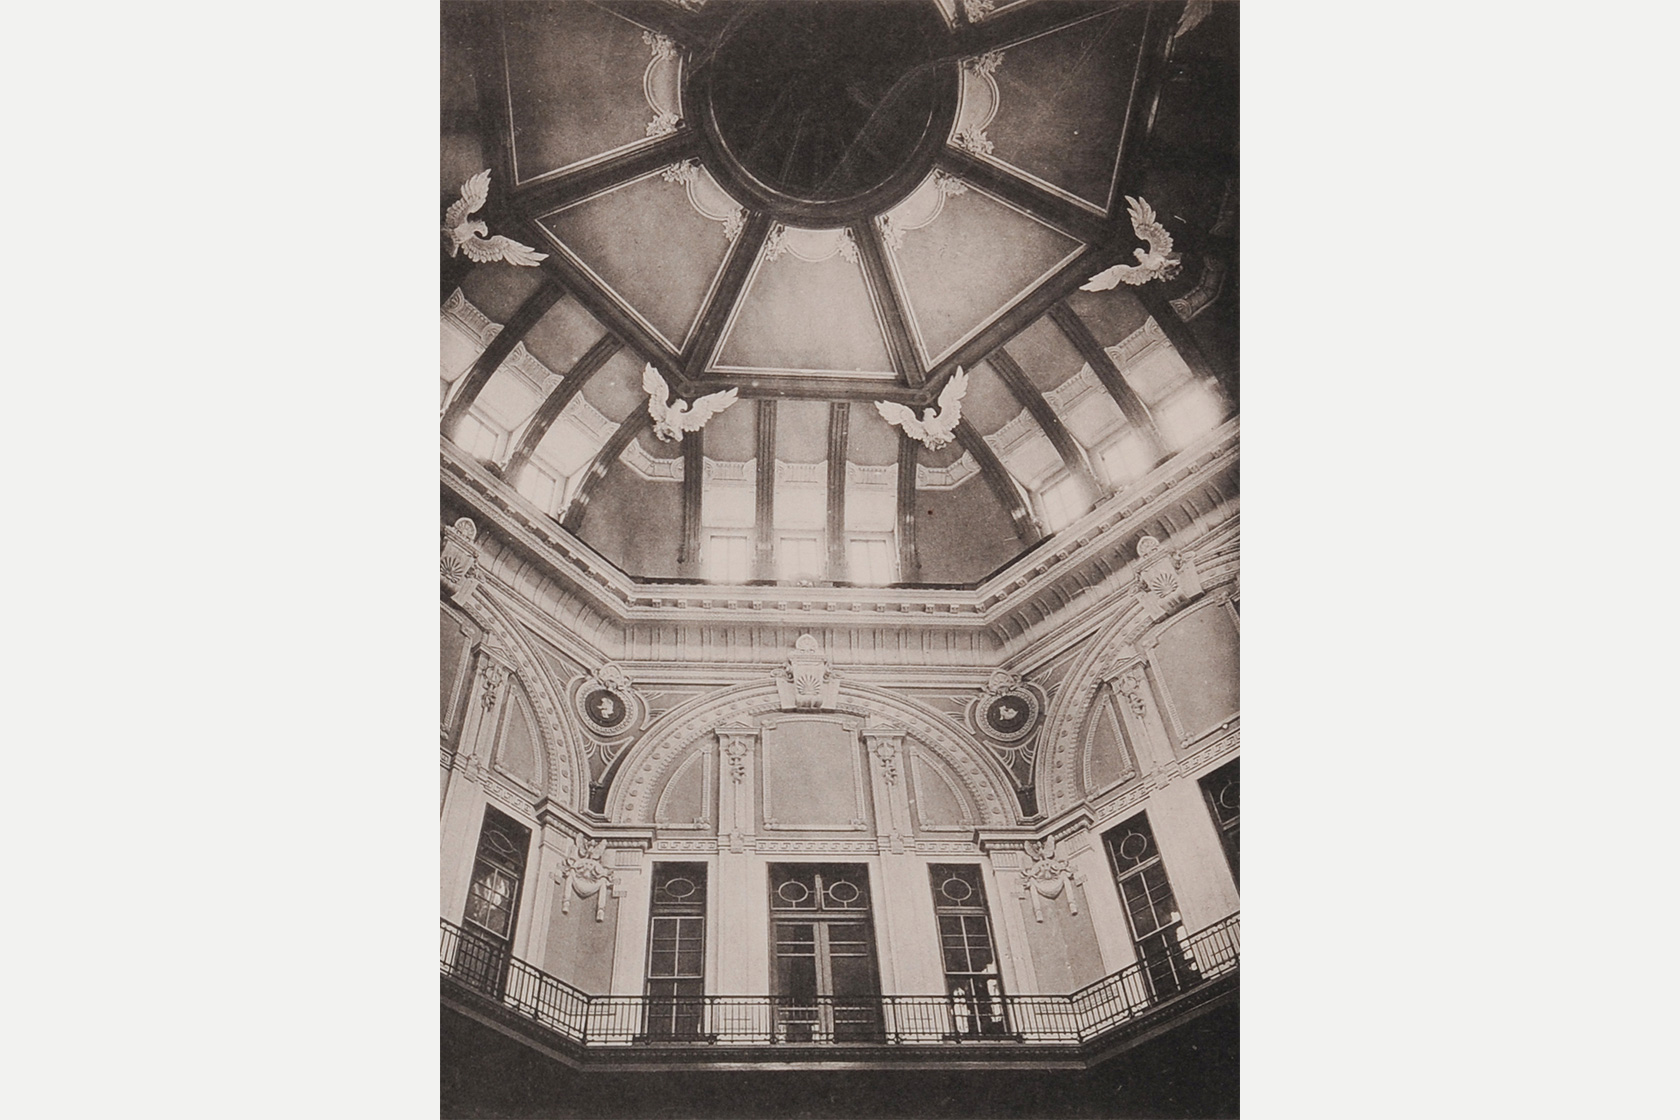 Original dome ceiling